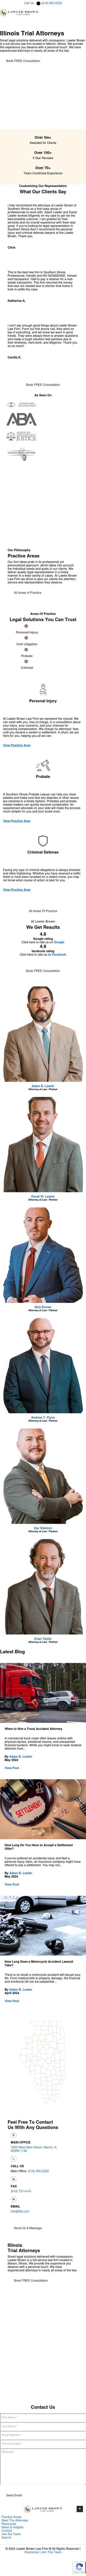 Adam B. Lawler Law Firm, LLC - Marion IL Lawyers